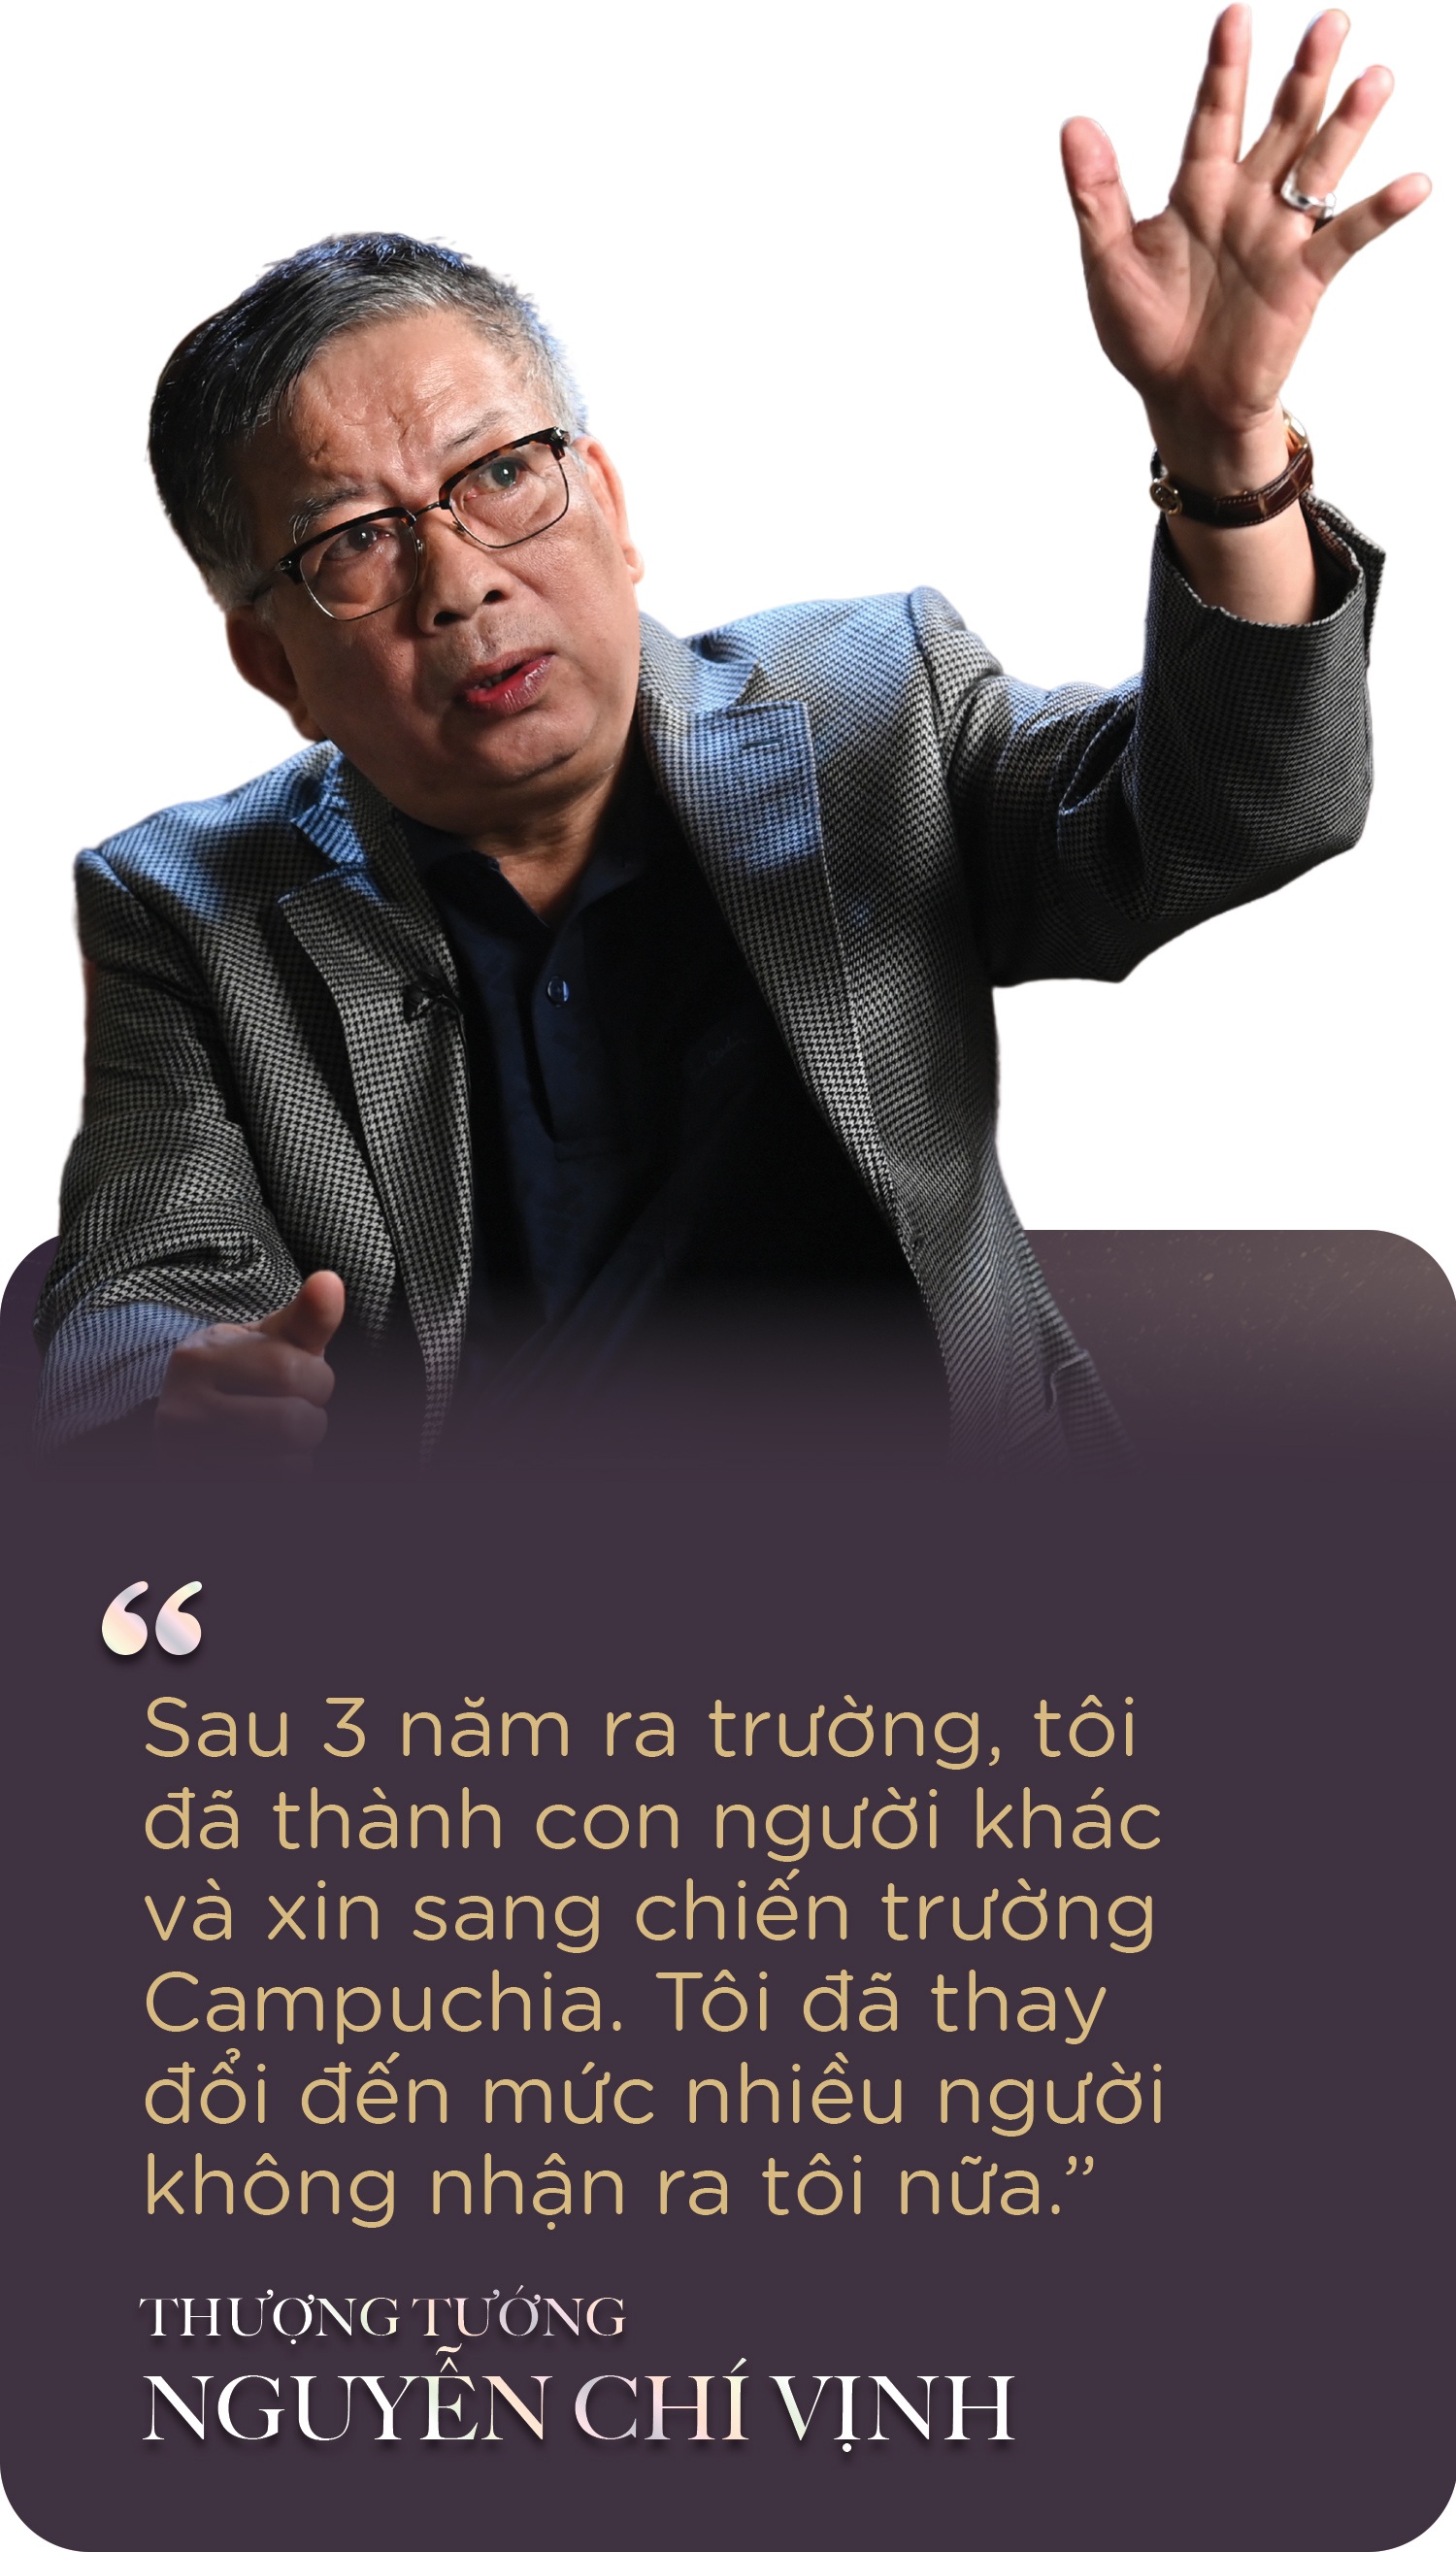 Lời hứa nuôi Nguyễn Chí Vịnh nên người của các Ủy viên Bộ Chính trị - 9